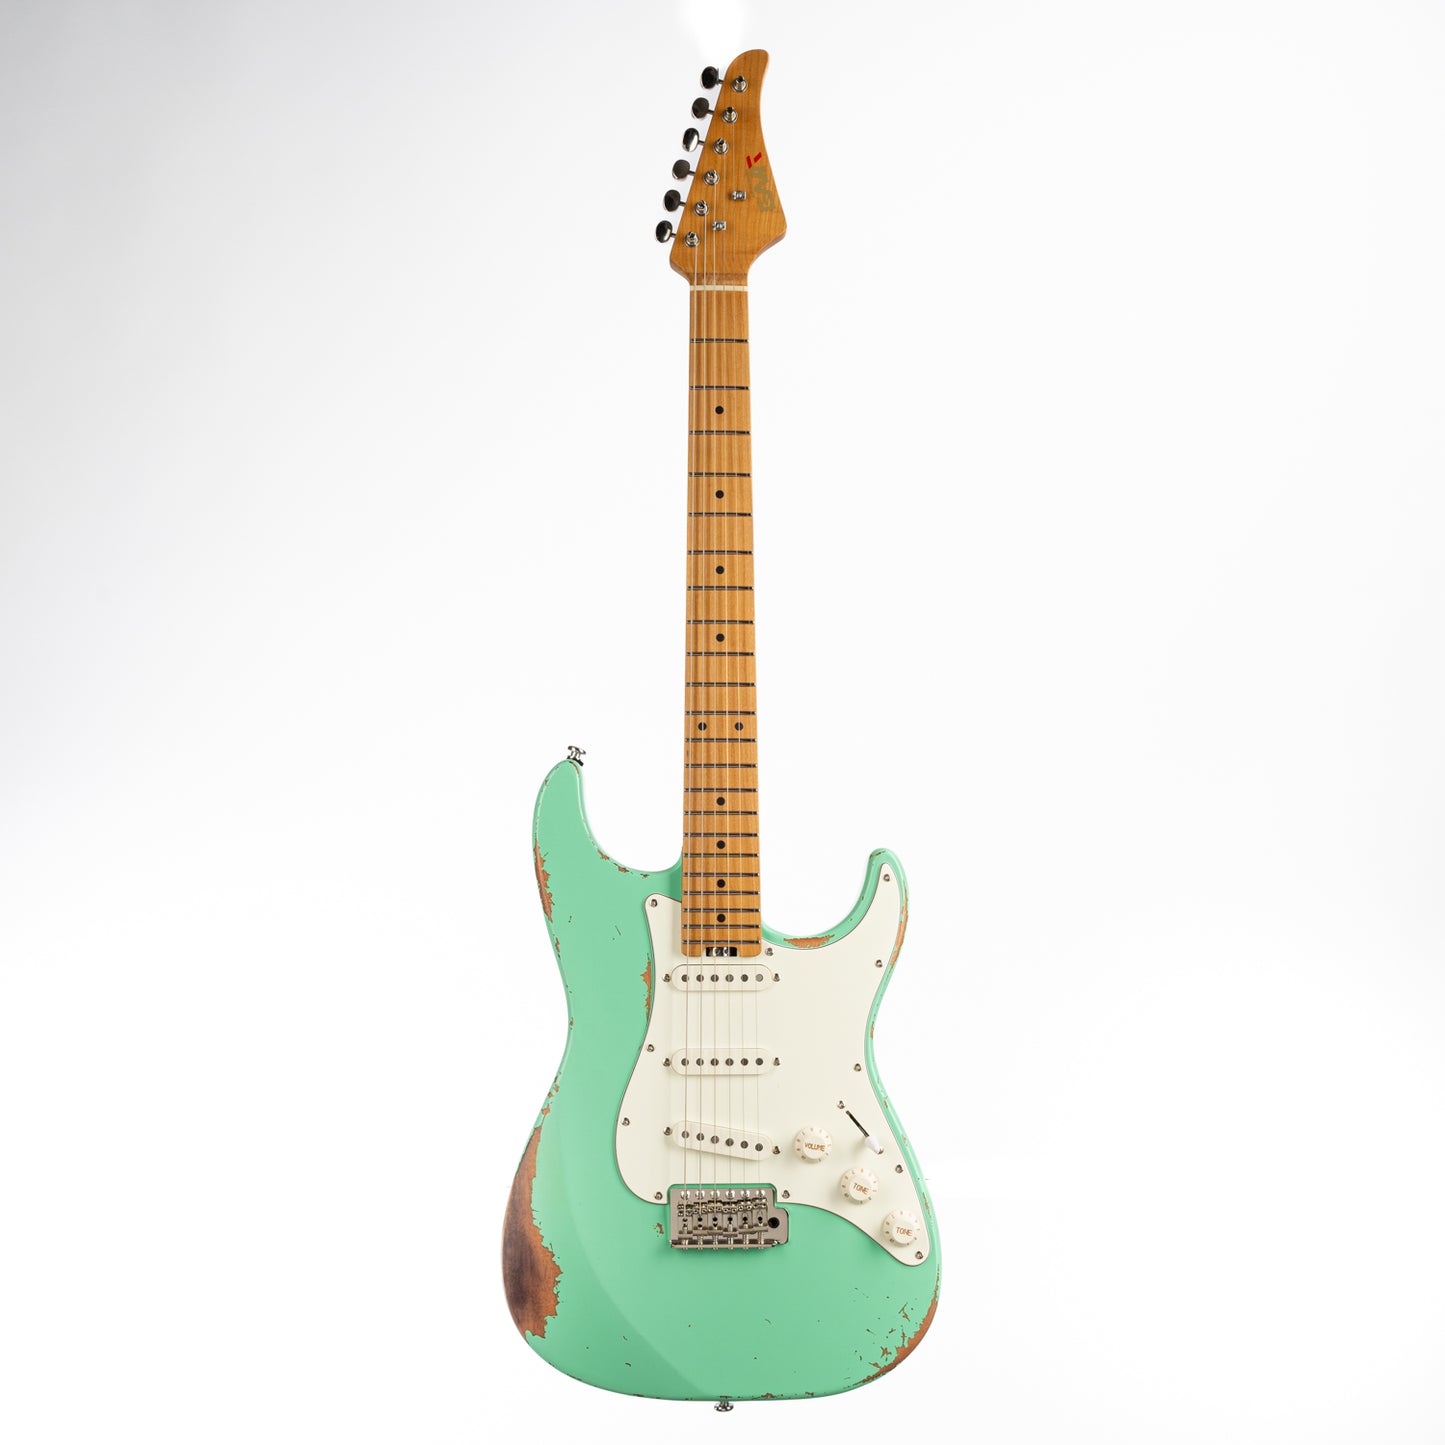 Eart electric guitar Vintage-VS60 maple fretboard green